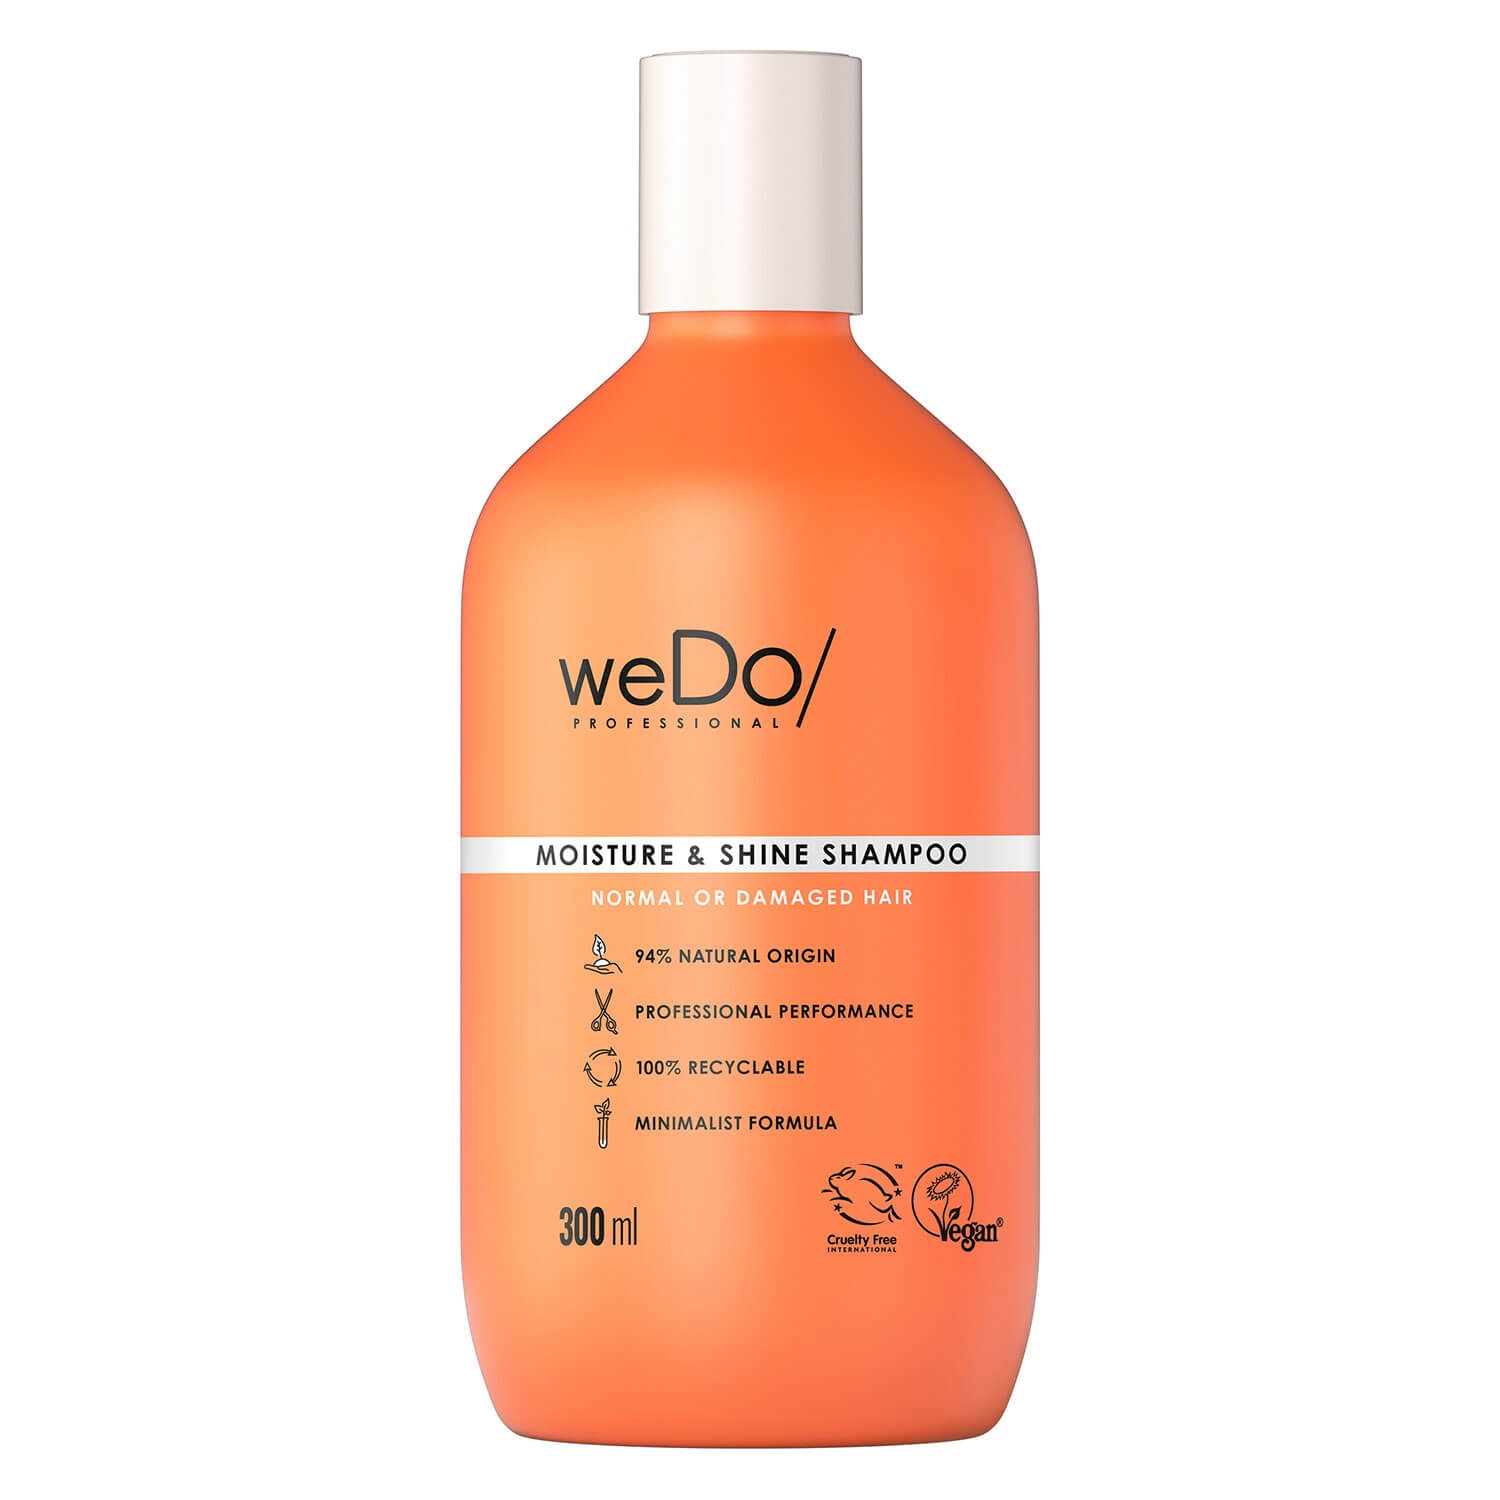 Produktbild von weDo/ - Moisture & Shine Shampoo